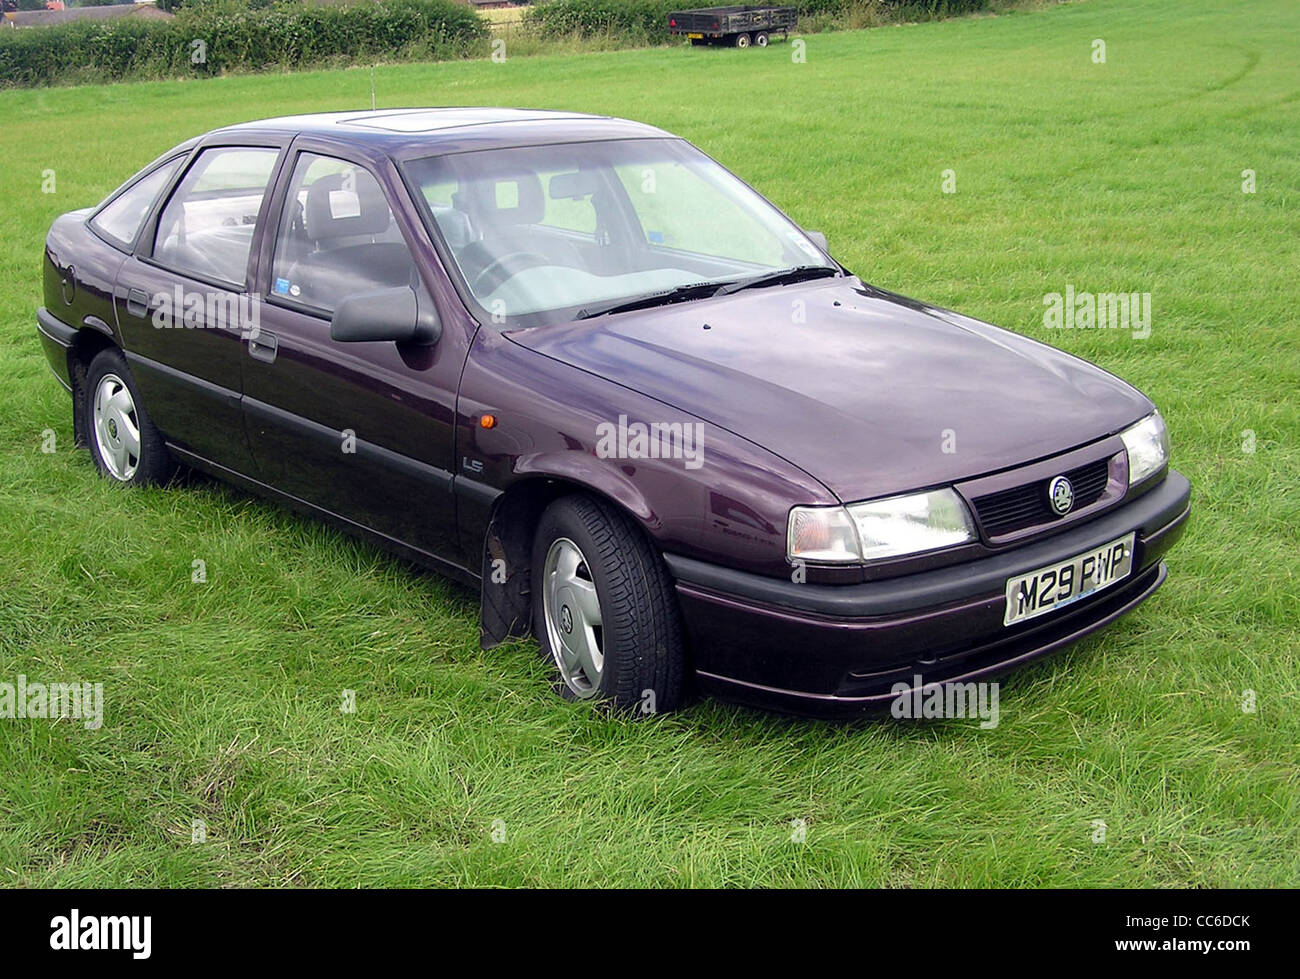 1994 Vauxhall Cavalier LS à Coalpit Heath Car Show, près de Bristol, Angleterre. Banque D'Images